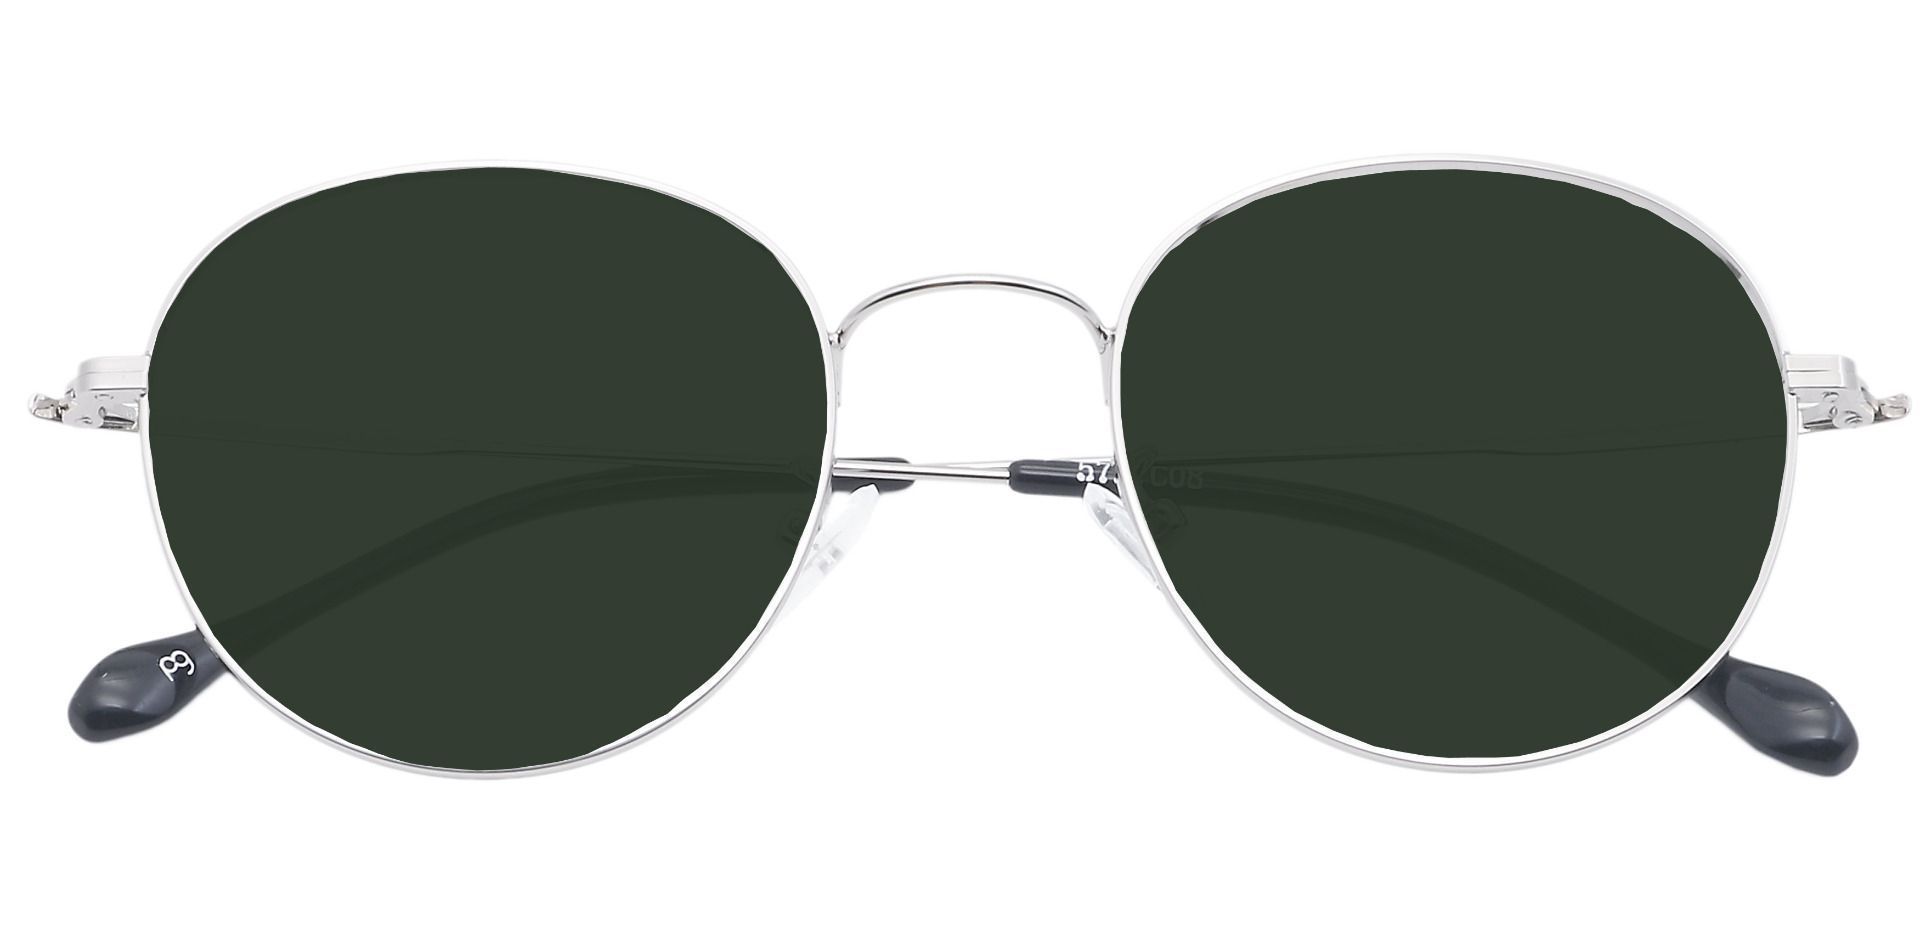 Miller Oval Prescription Sunglasses - Gray Frame With Green Lenses